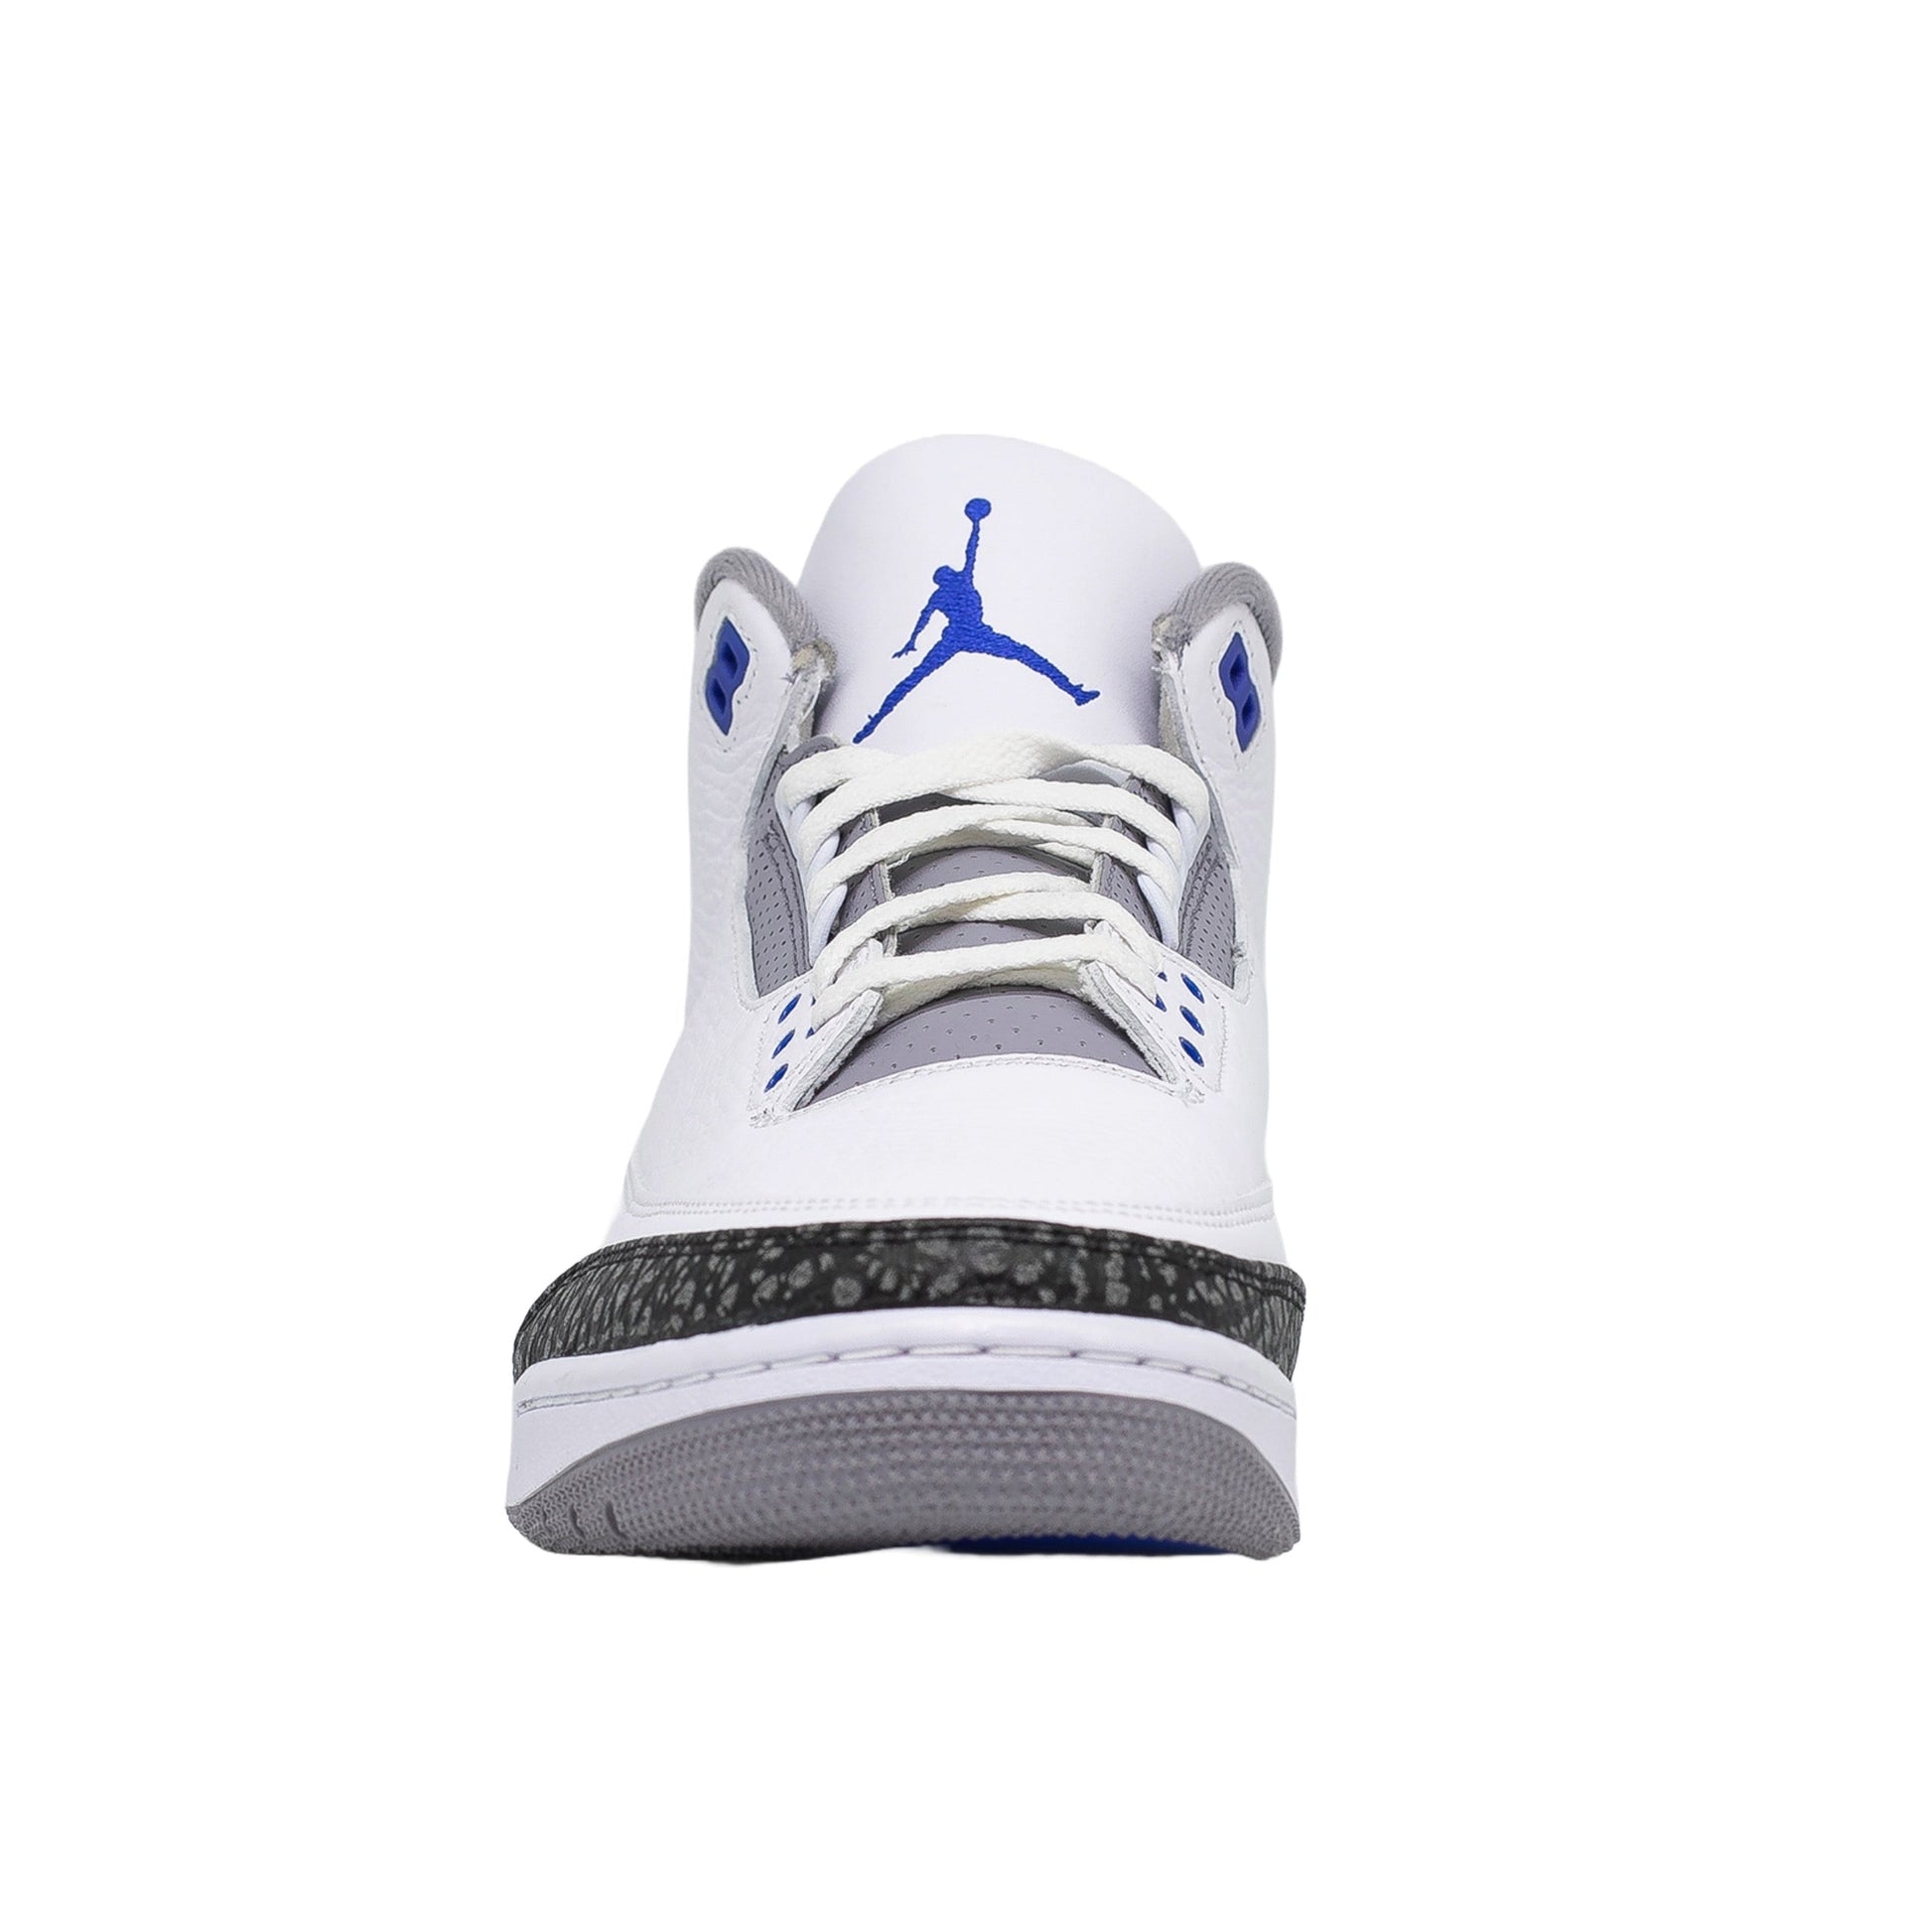 NEU Nike Air Jordan 6 Carmine Original US13 47